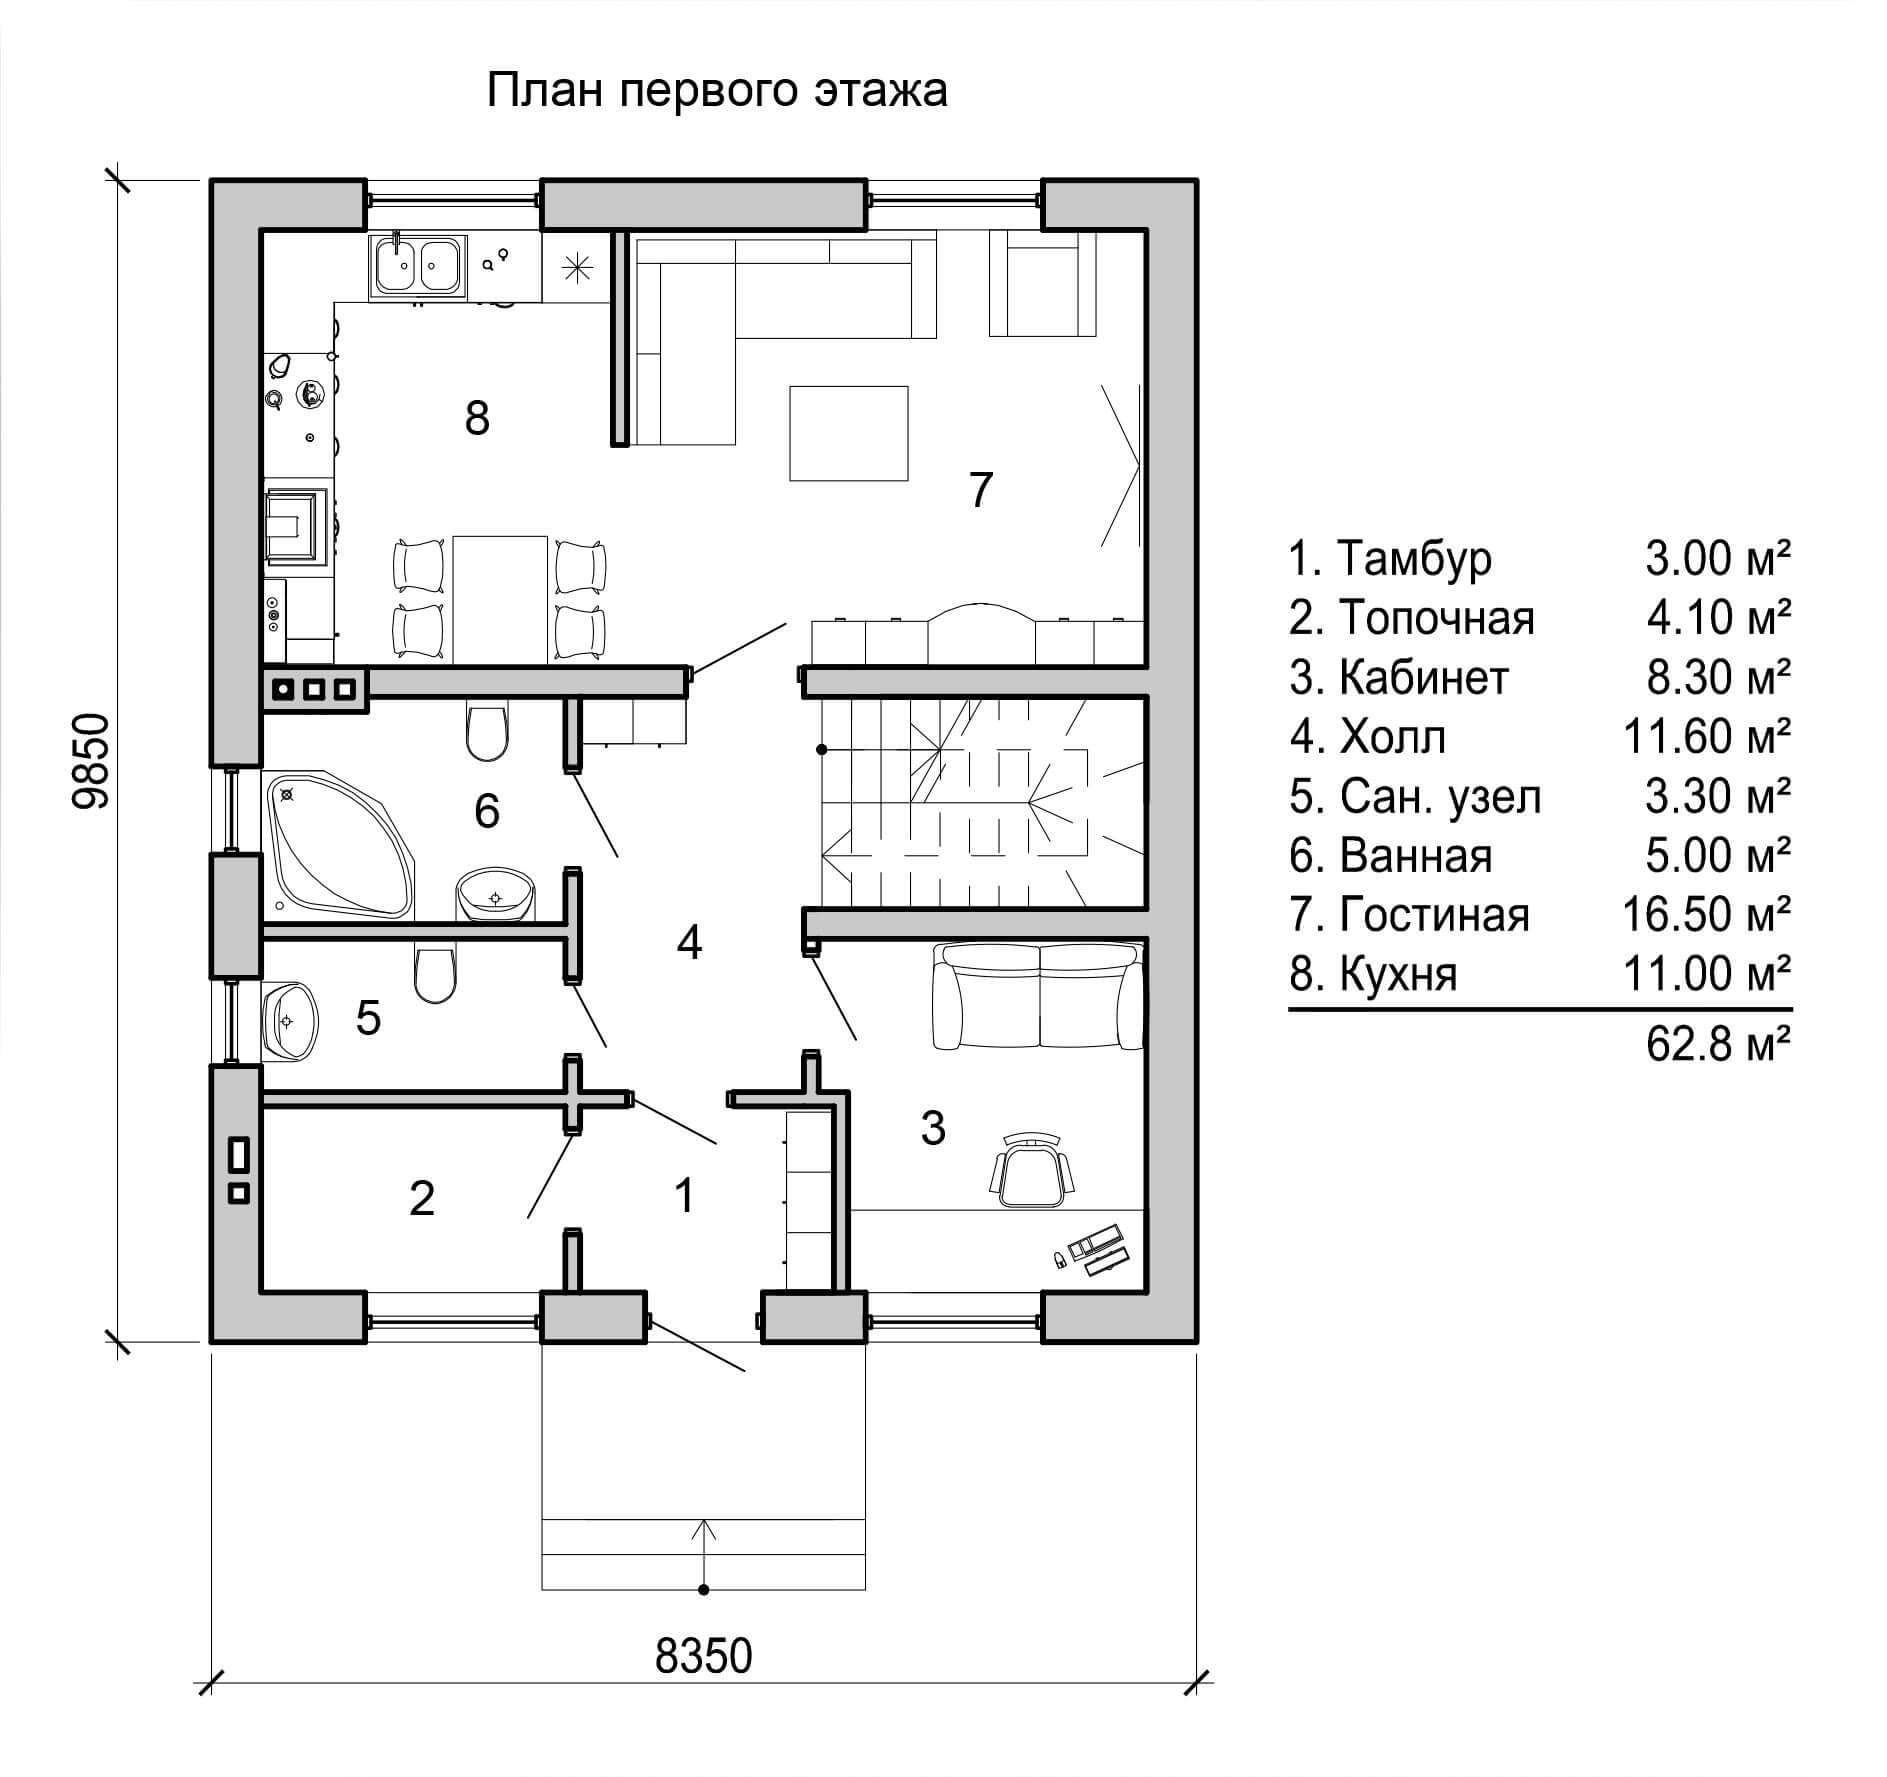 Дом 4 комнаты 2 этажа. Планировка двухэтажного дома 120 кв. Дом 150 м2 двухэтажный планировка. Планировка двухэтажного дома 120 кв.м с лестницей сбоку дома. Планировка доv.